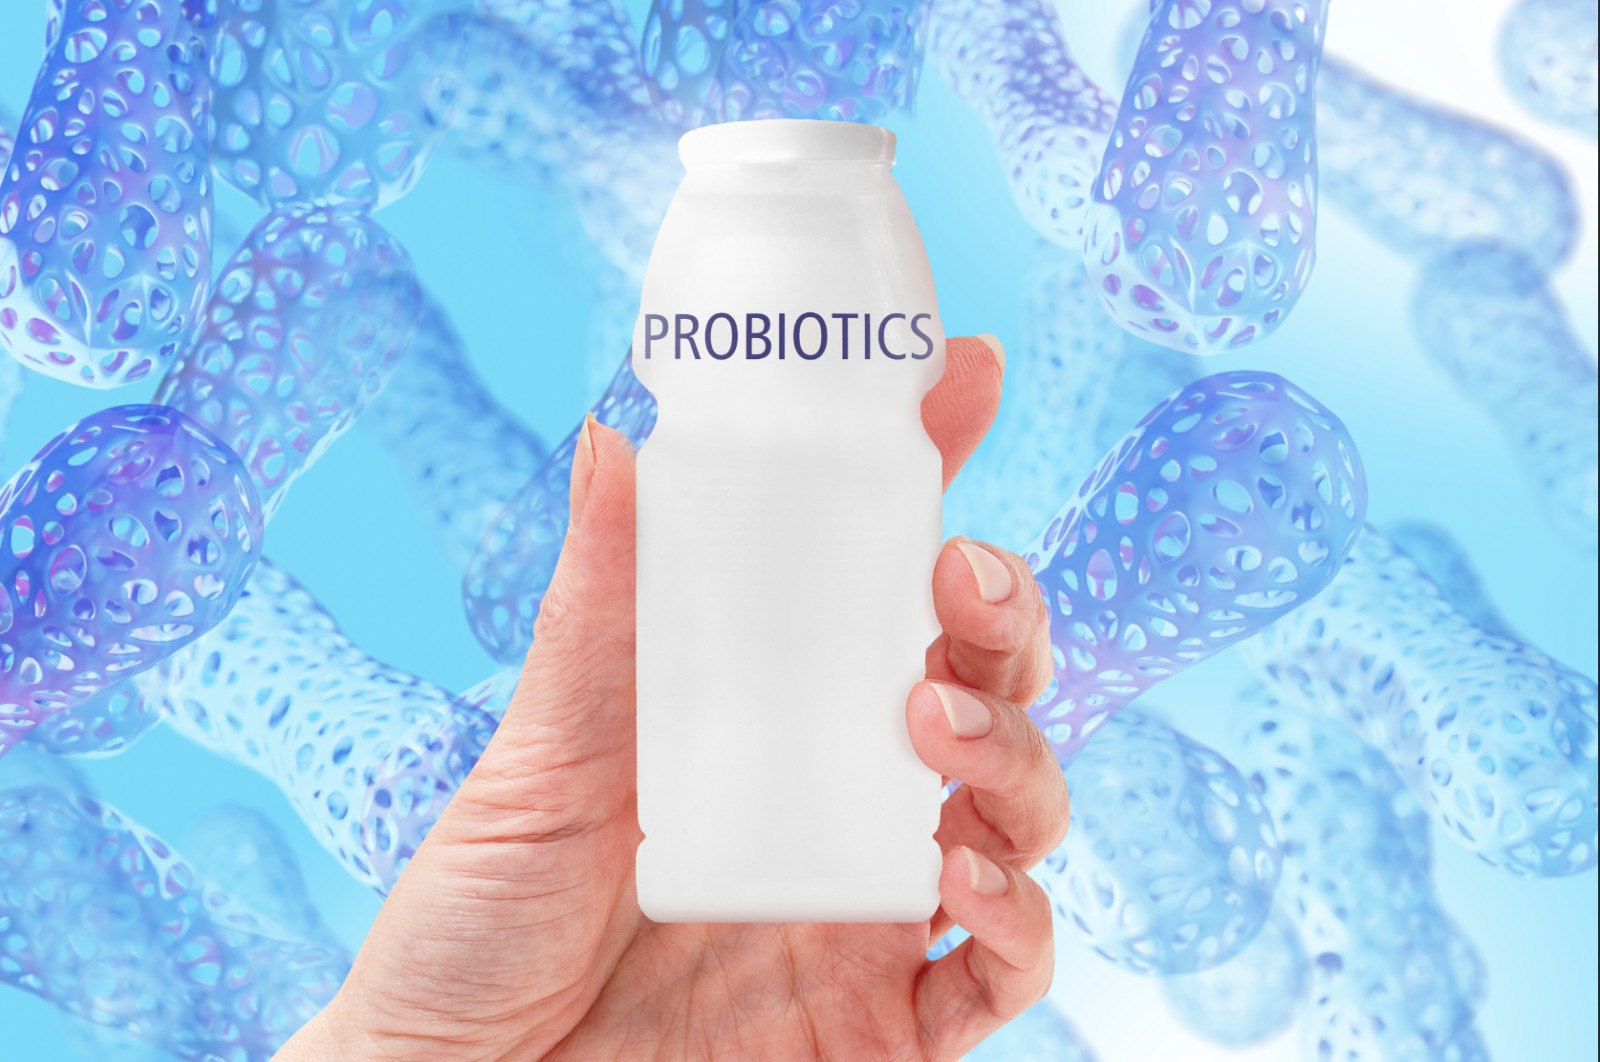 Các nhà khoa học đã chứng minh probiotics (lợi khuẩn) có khả năng giúp giảm nồng độ kim loại nặng trong máu. Nguồn: Istock.